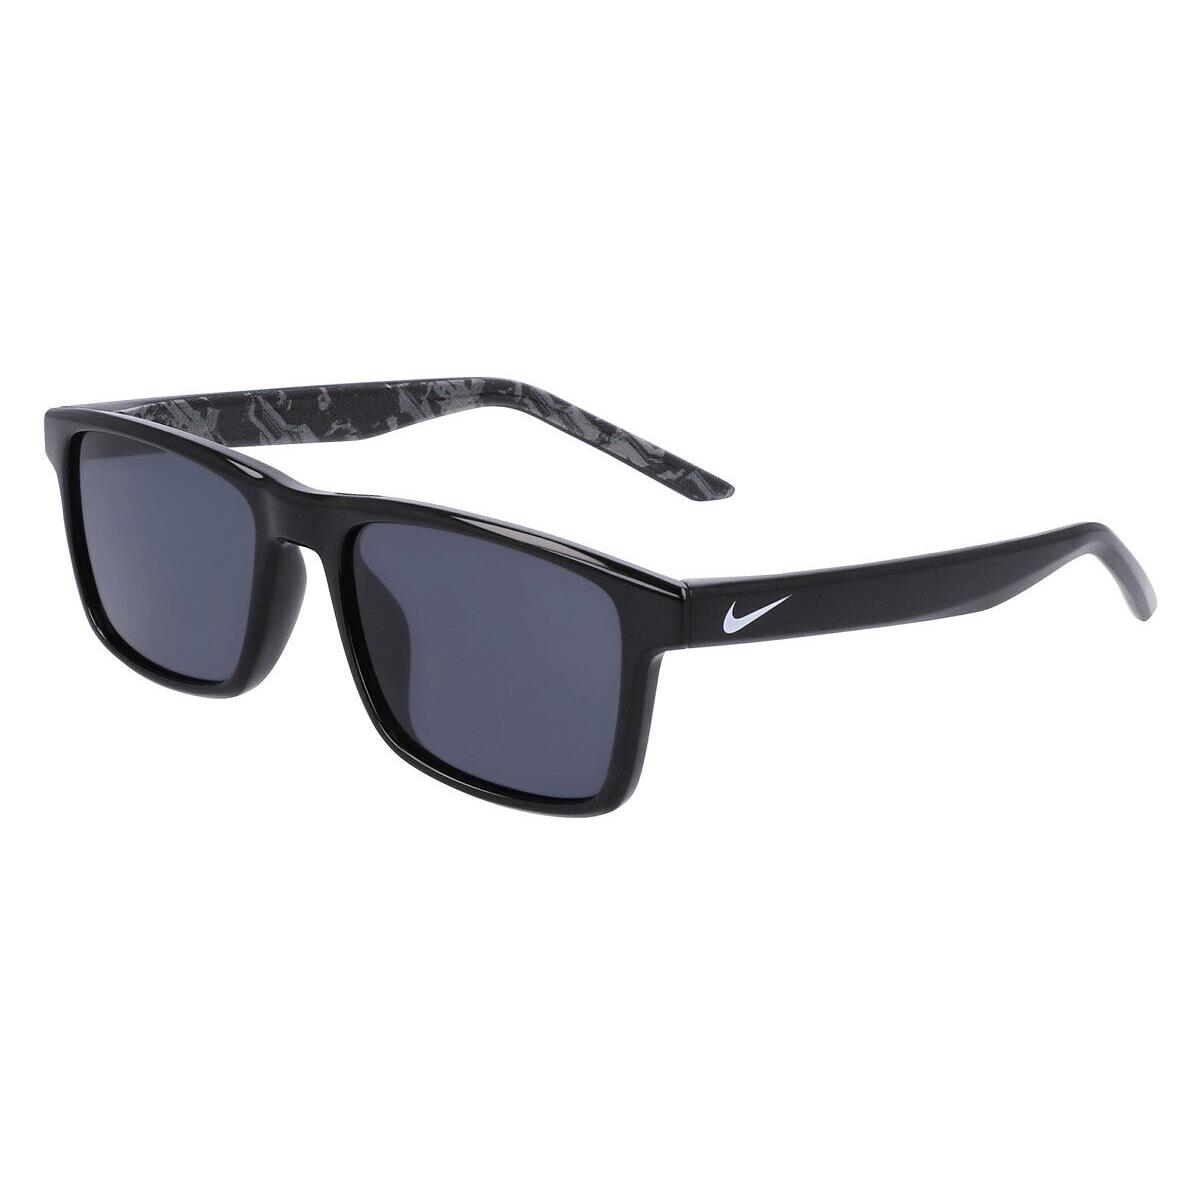 Nike Cheer DZ7380 Sunglasses Black Dark Gray 49mm